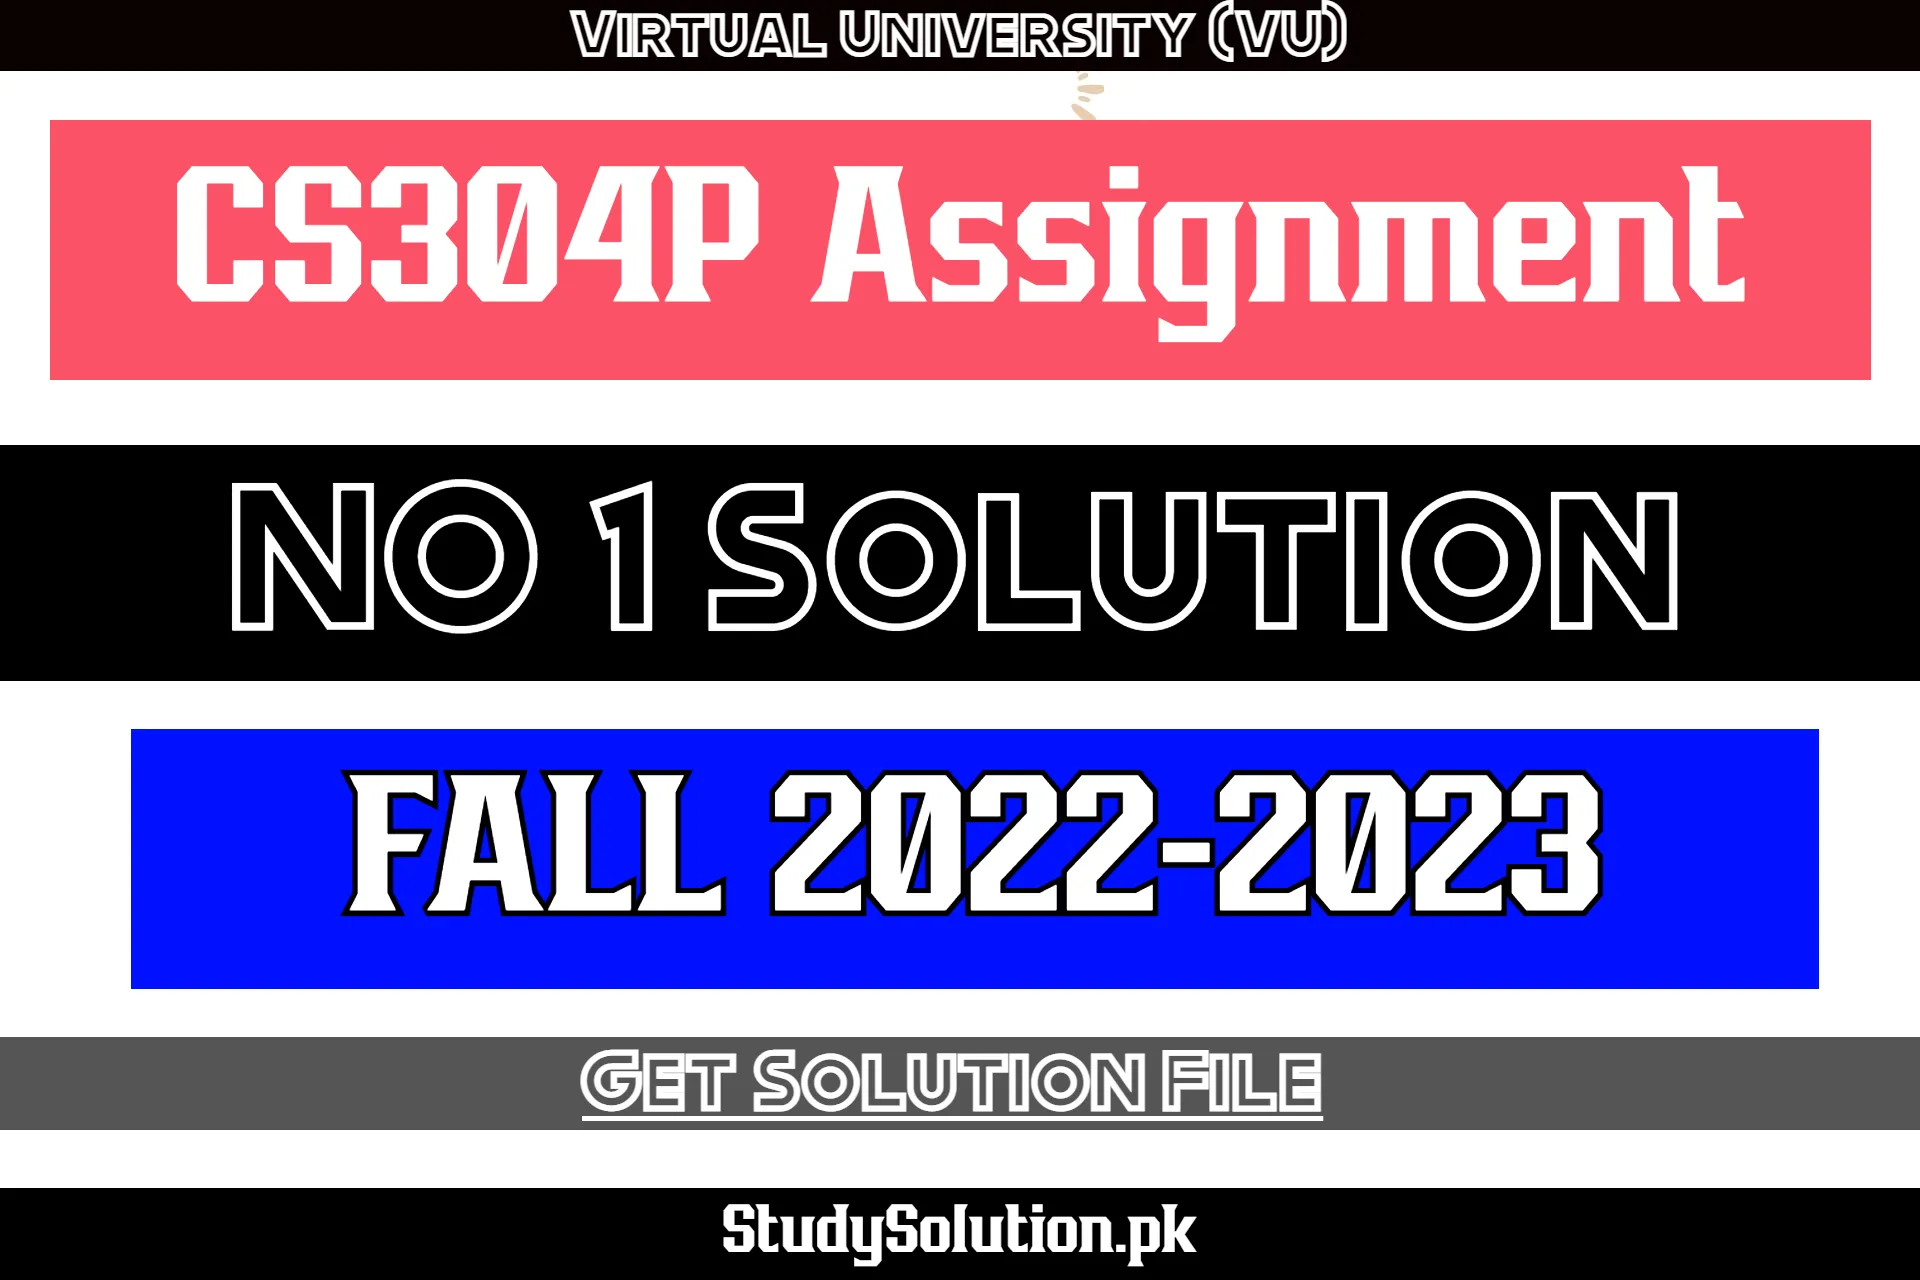 CS304P Assignment No 1 Solution Fall 2022